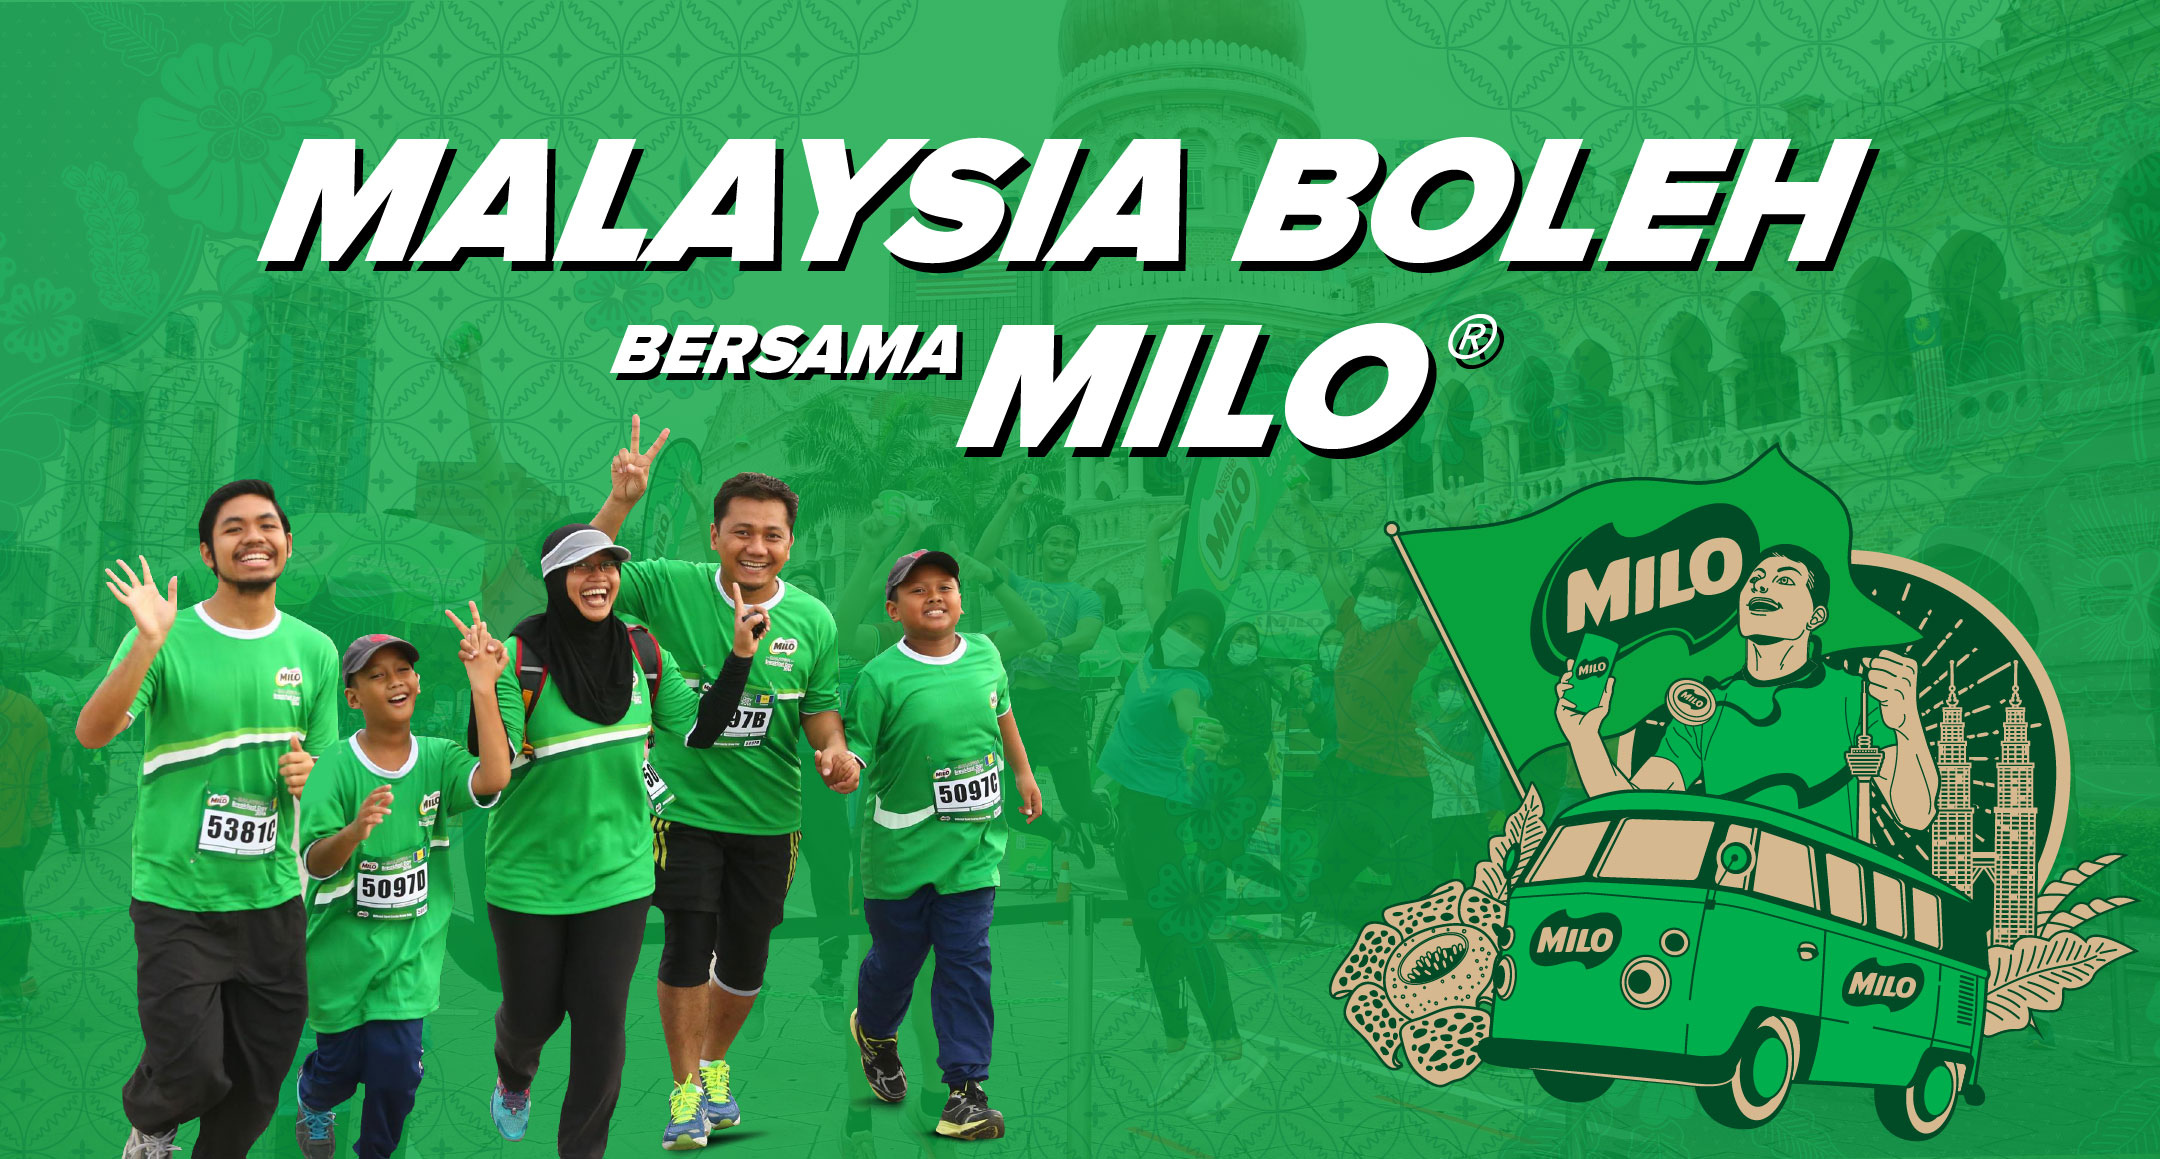 Malaysia Boleh Bersama MILO®